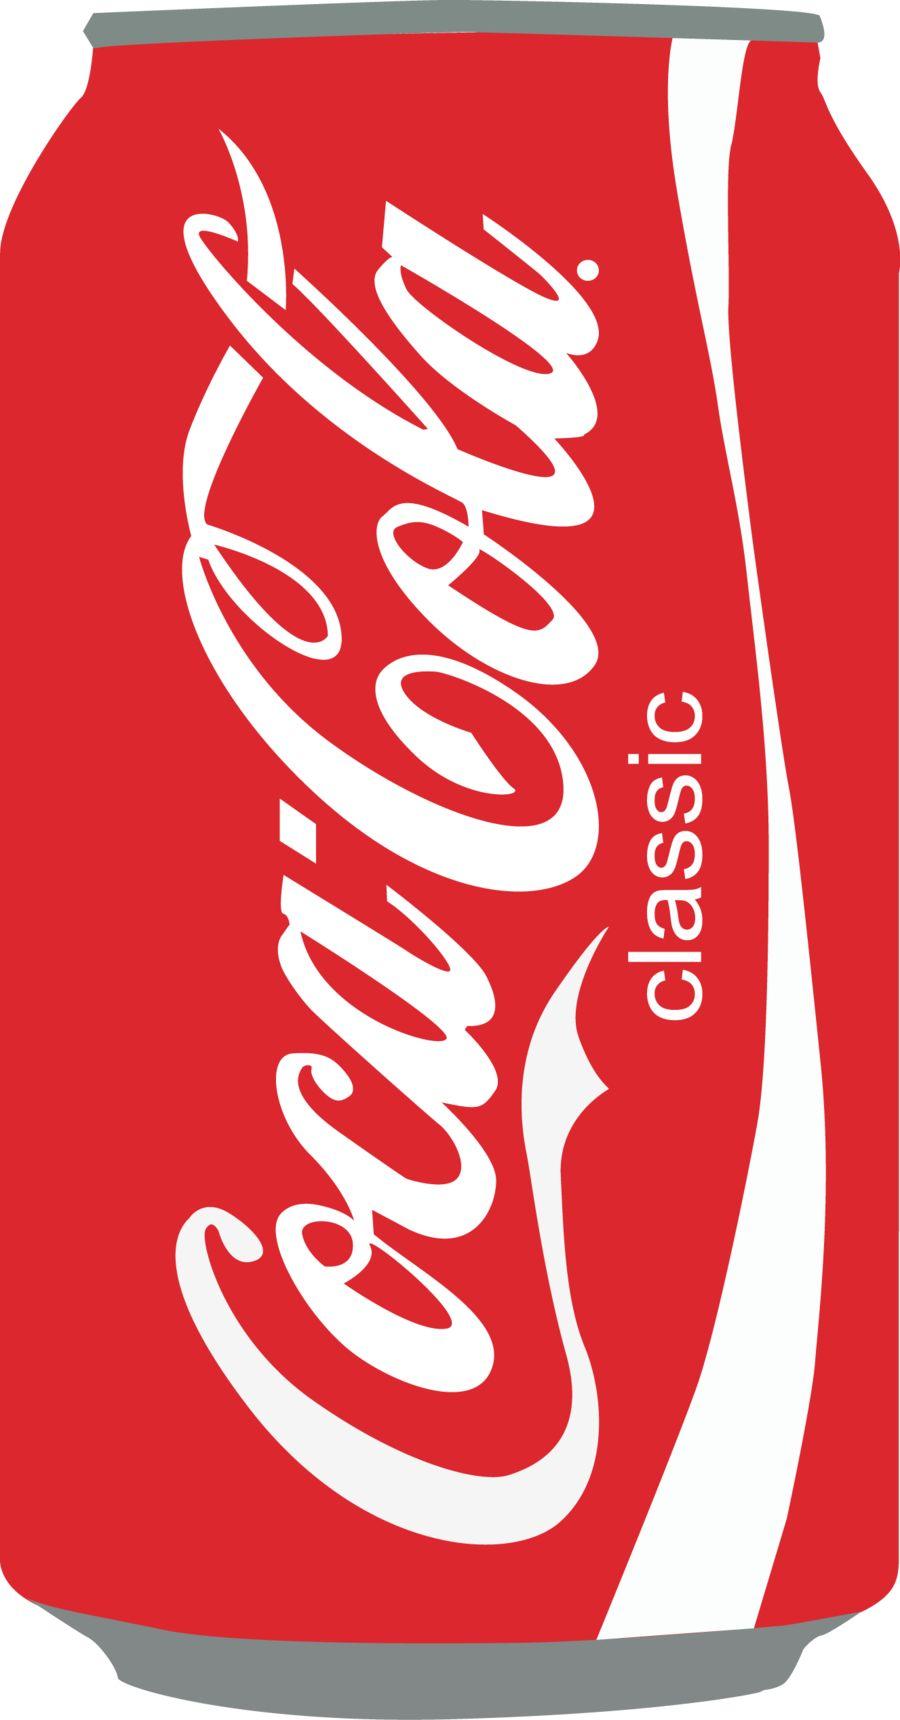 Coke art. Awesome Art. Coke, Coca Cola and Cola